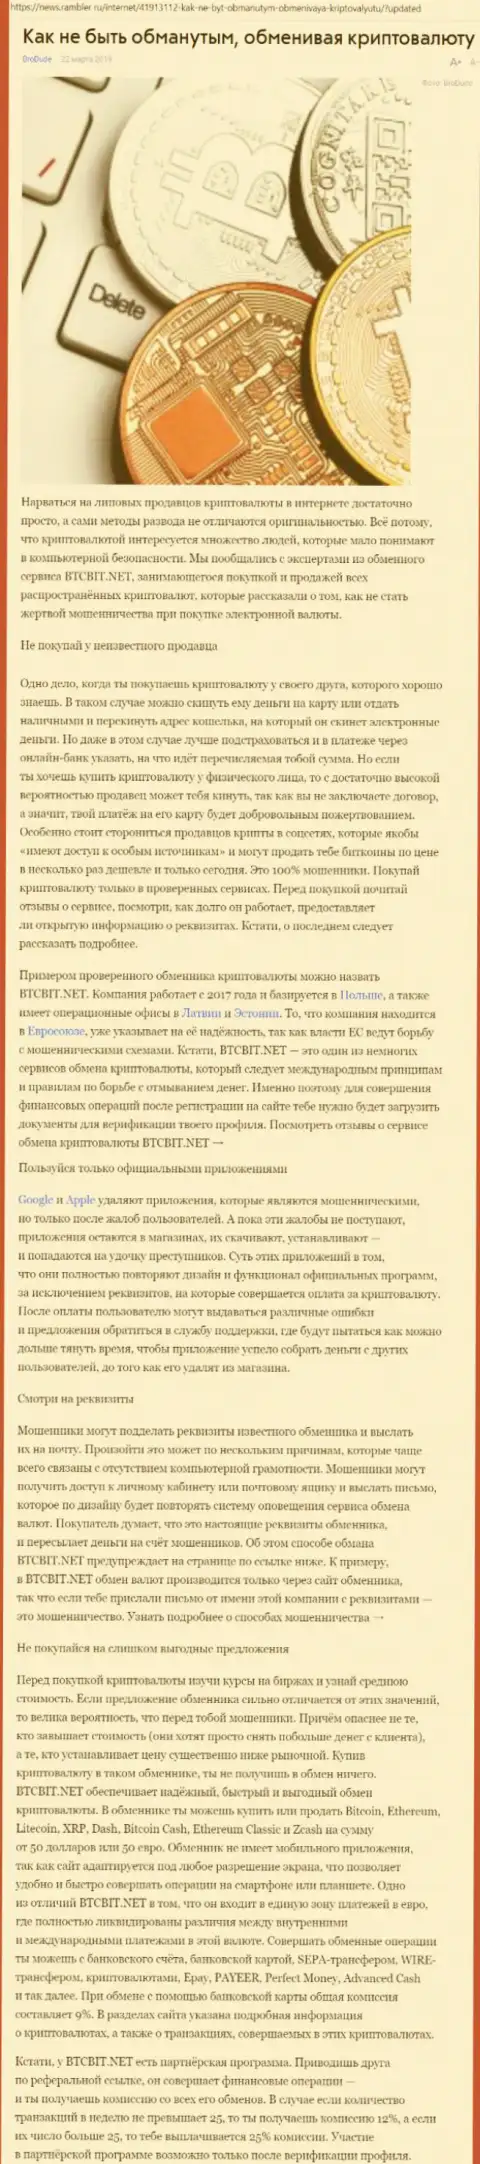 Статья о БТЦБИТ Нет на news rambler ru